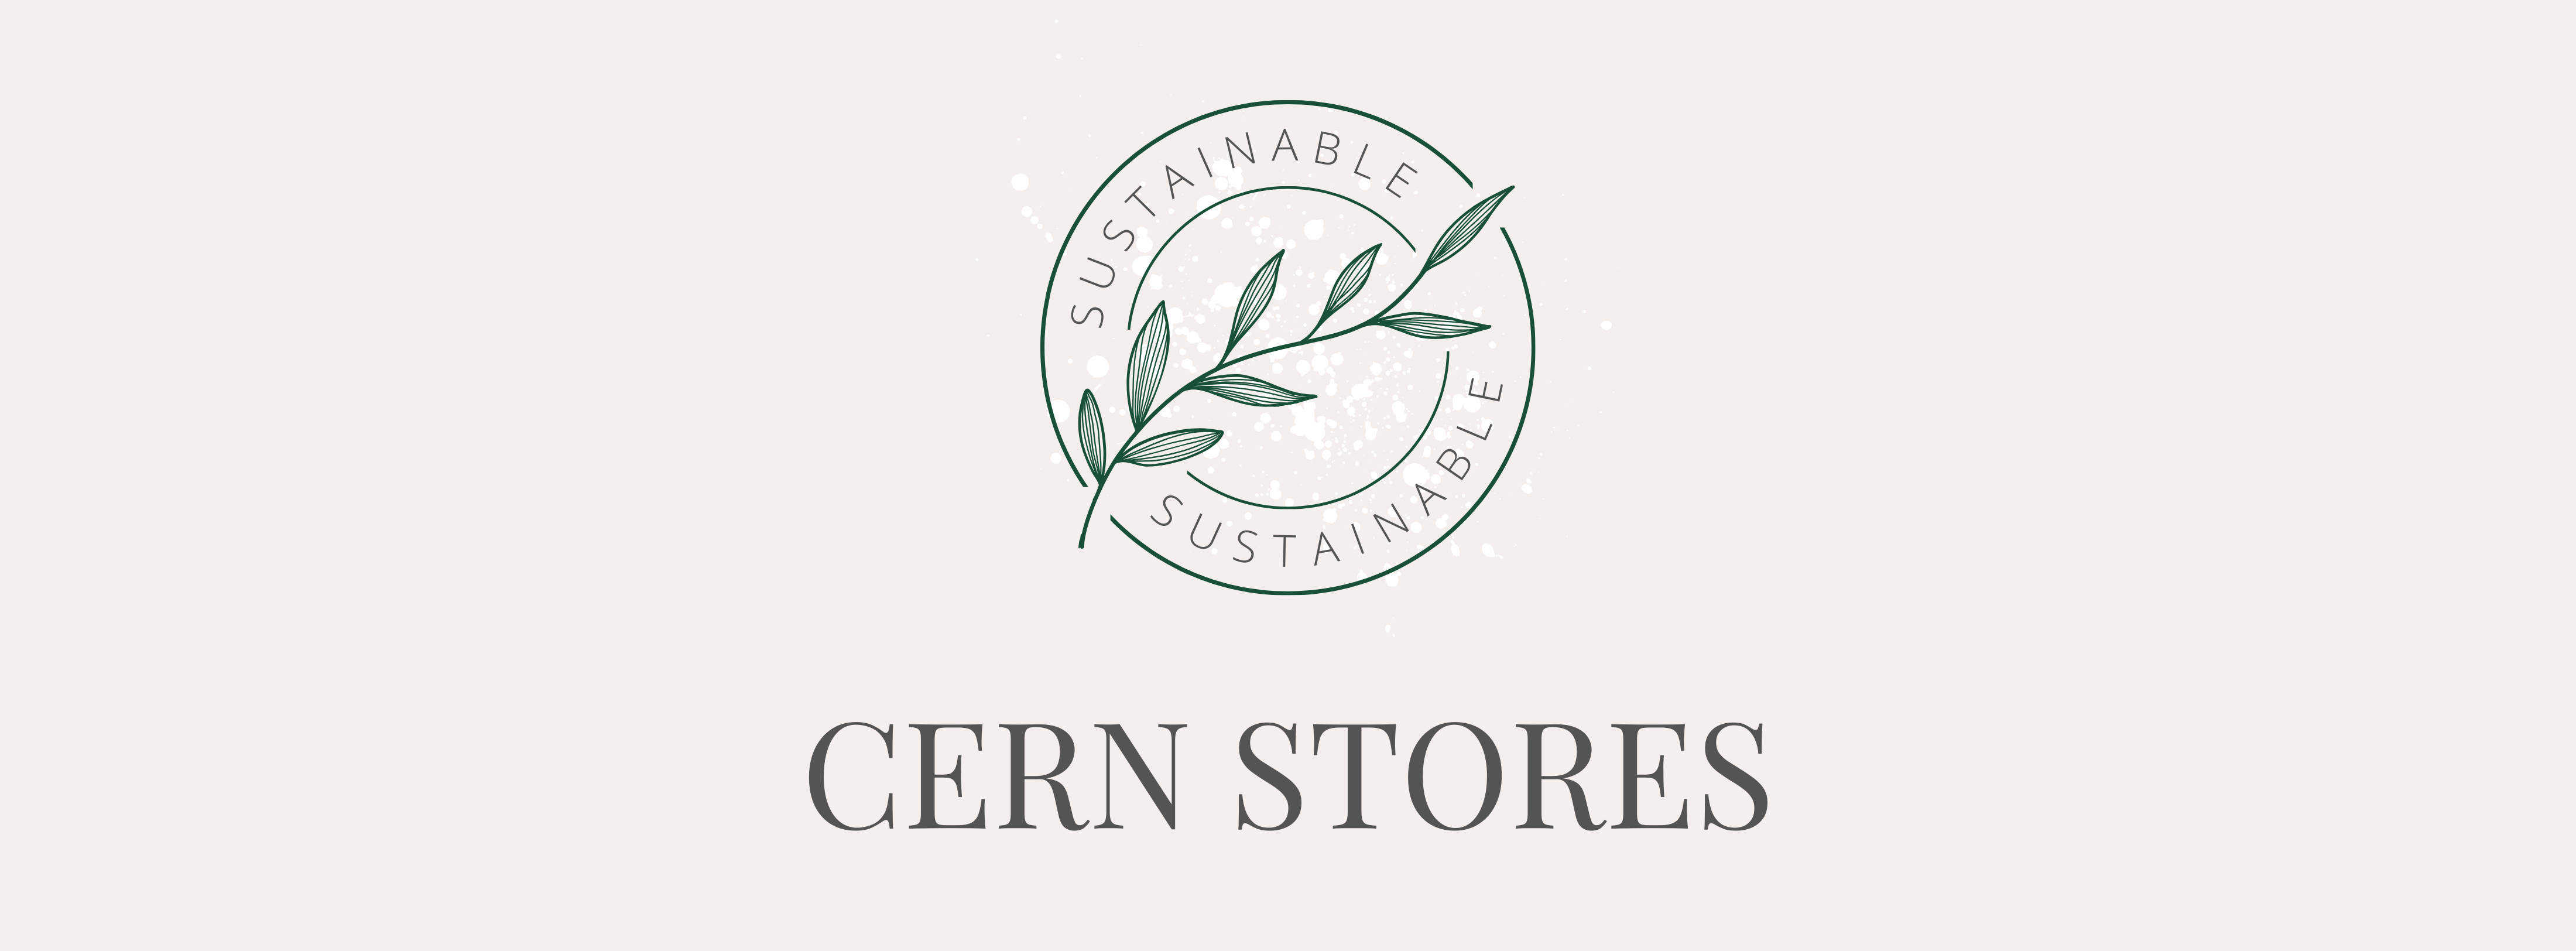 cern stores